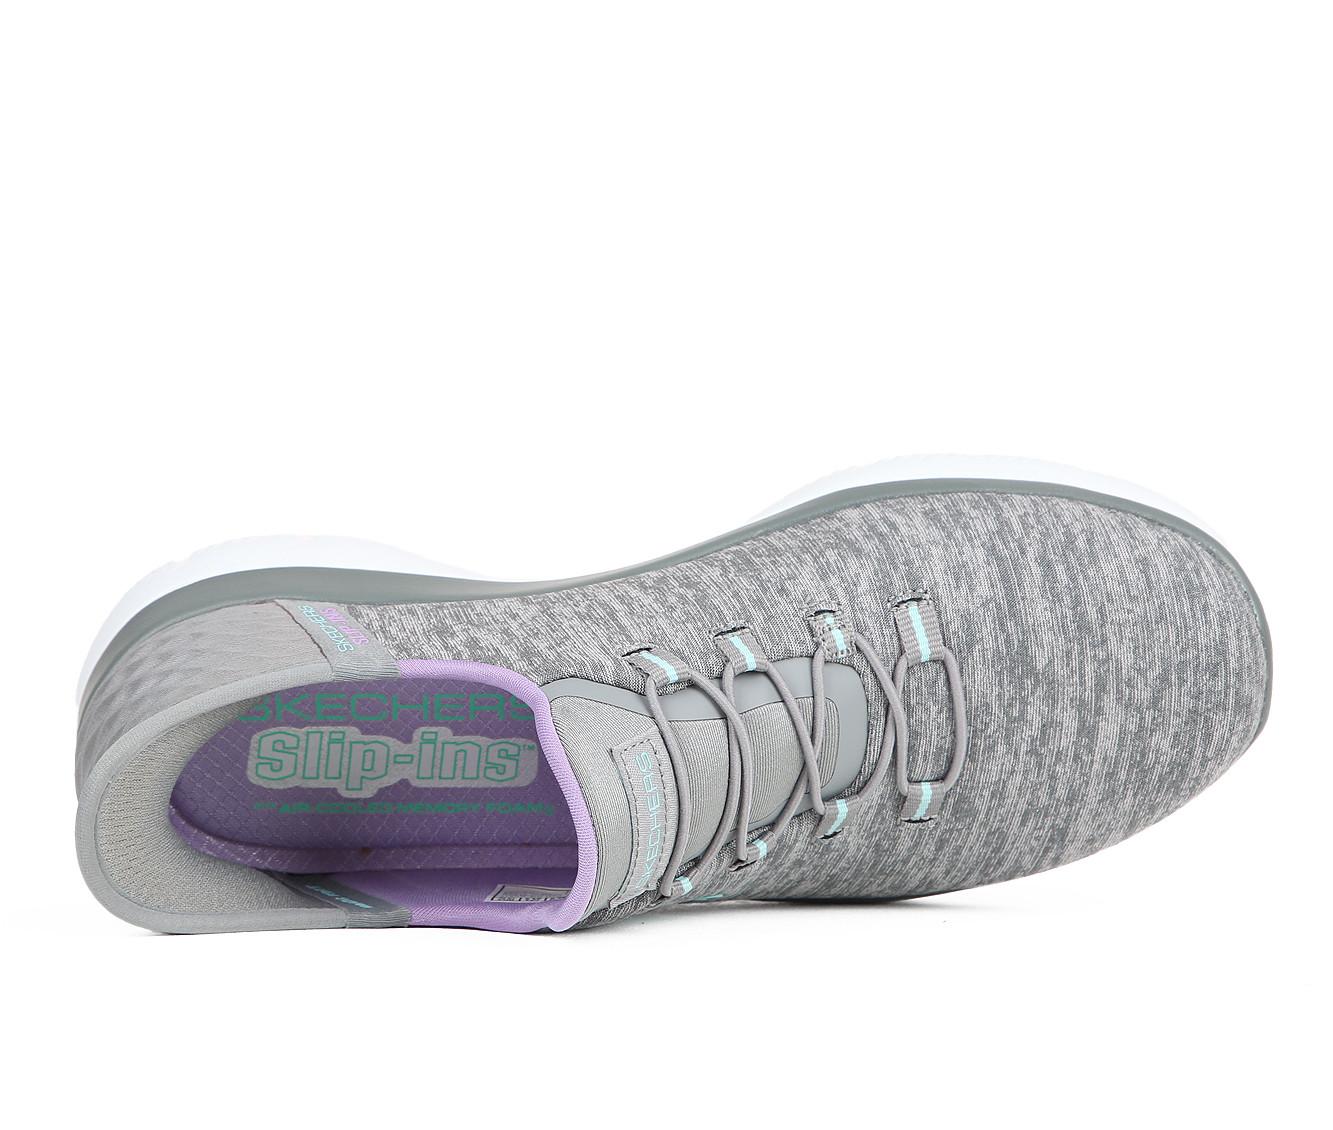 Skechers 149937 Navy/Purple Slip-Ins Air-Cooled Memory Foam Sneaker